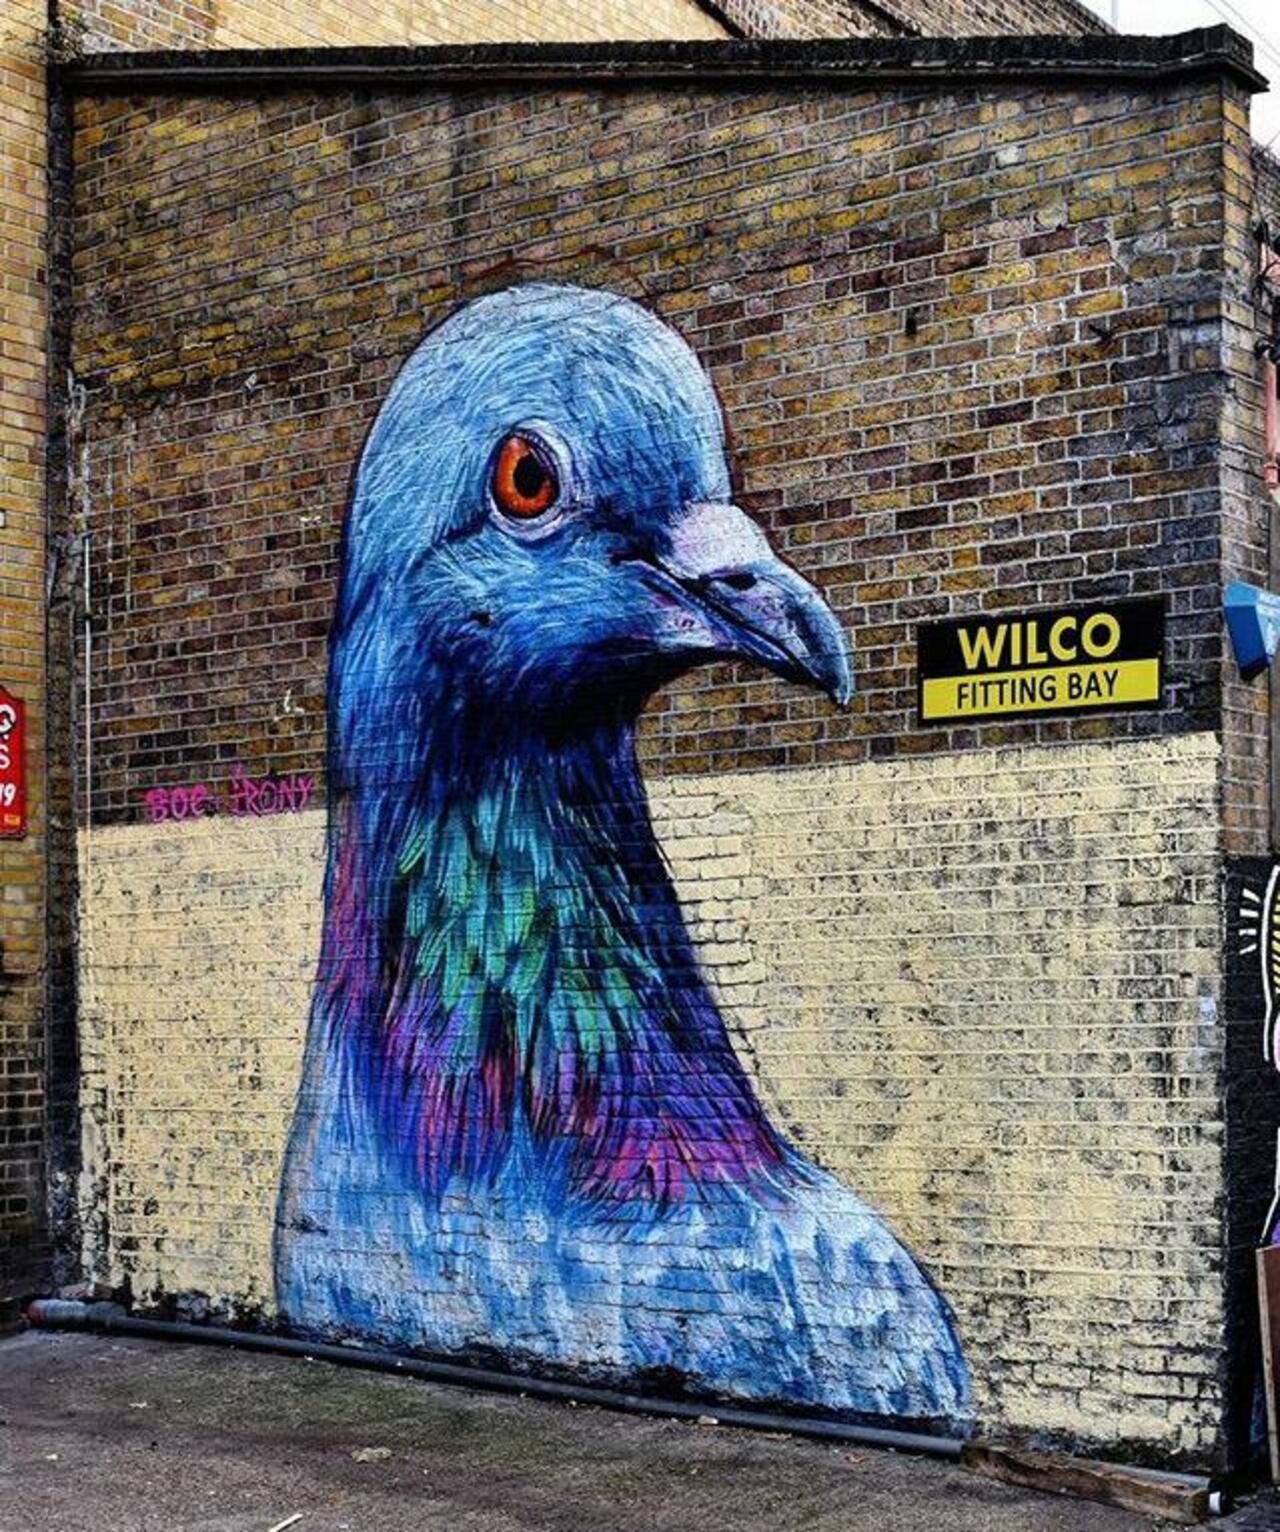 Street Art by Placee Boe & whoamirony in London 

#art #graffiti #mural #streetart http://t.co/3UuRBKdR2G